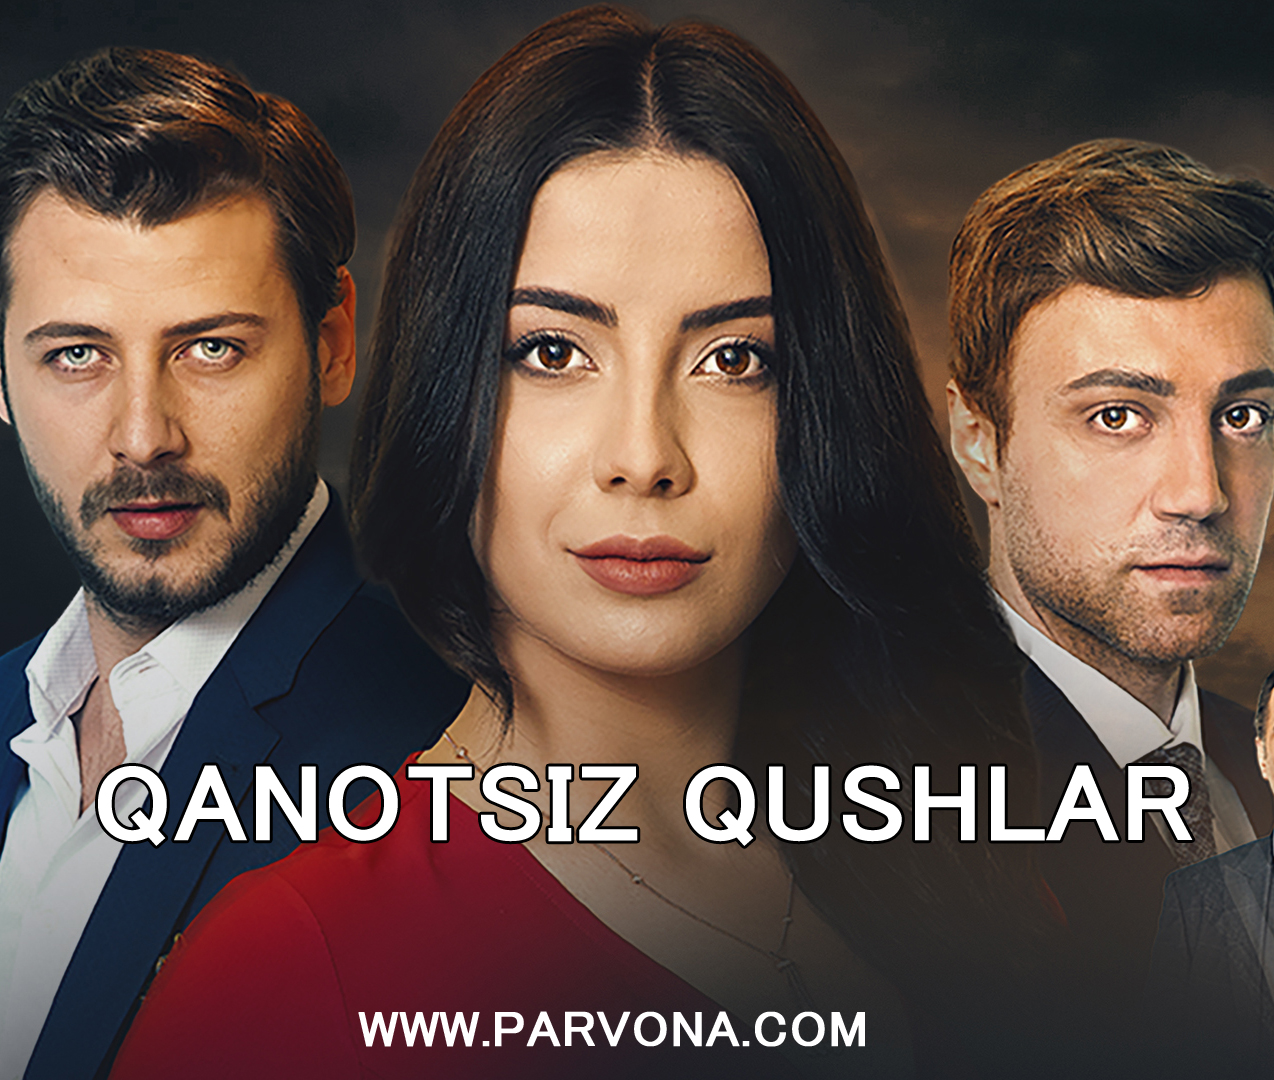 Qanotsiz qushlar turk serial - Jenerik (Soundtrack)